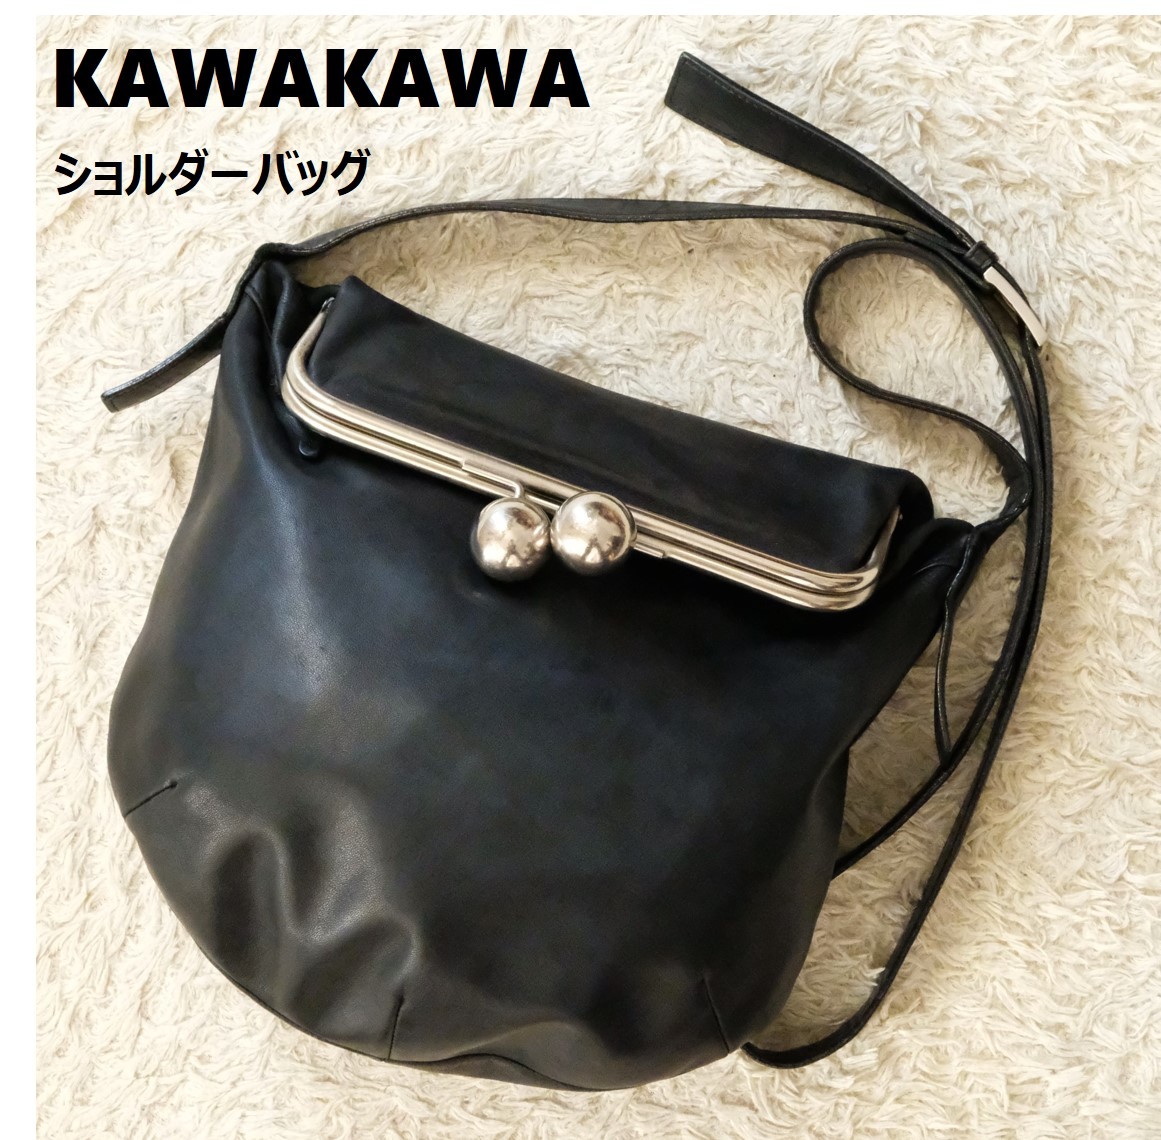 KAWAKAWA カワカワ ショルダーバッグ がま口 レザー ブラック レッド Kawa-Kawa